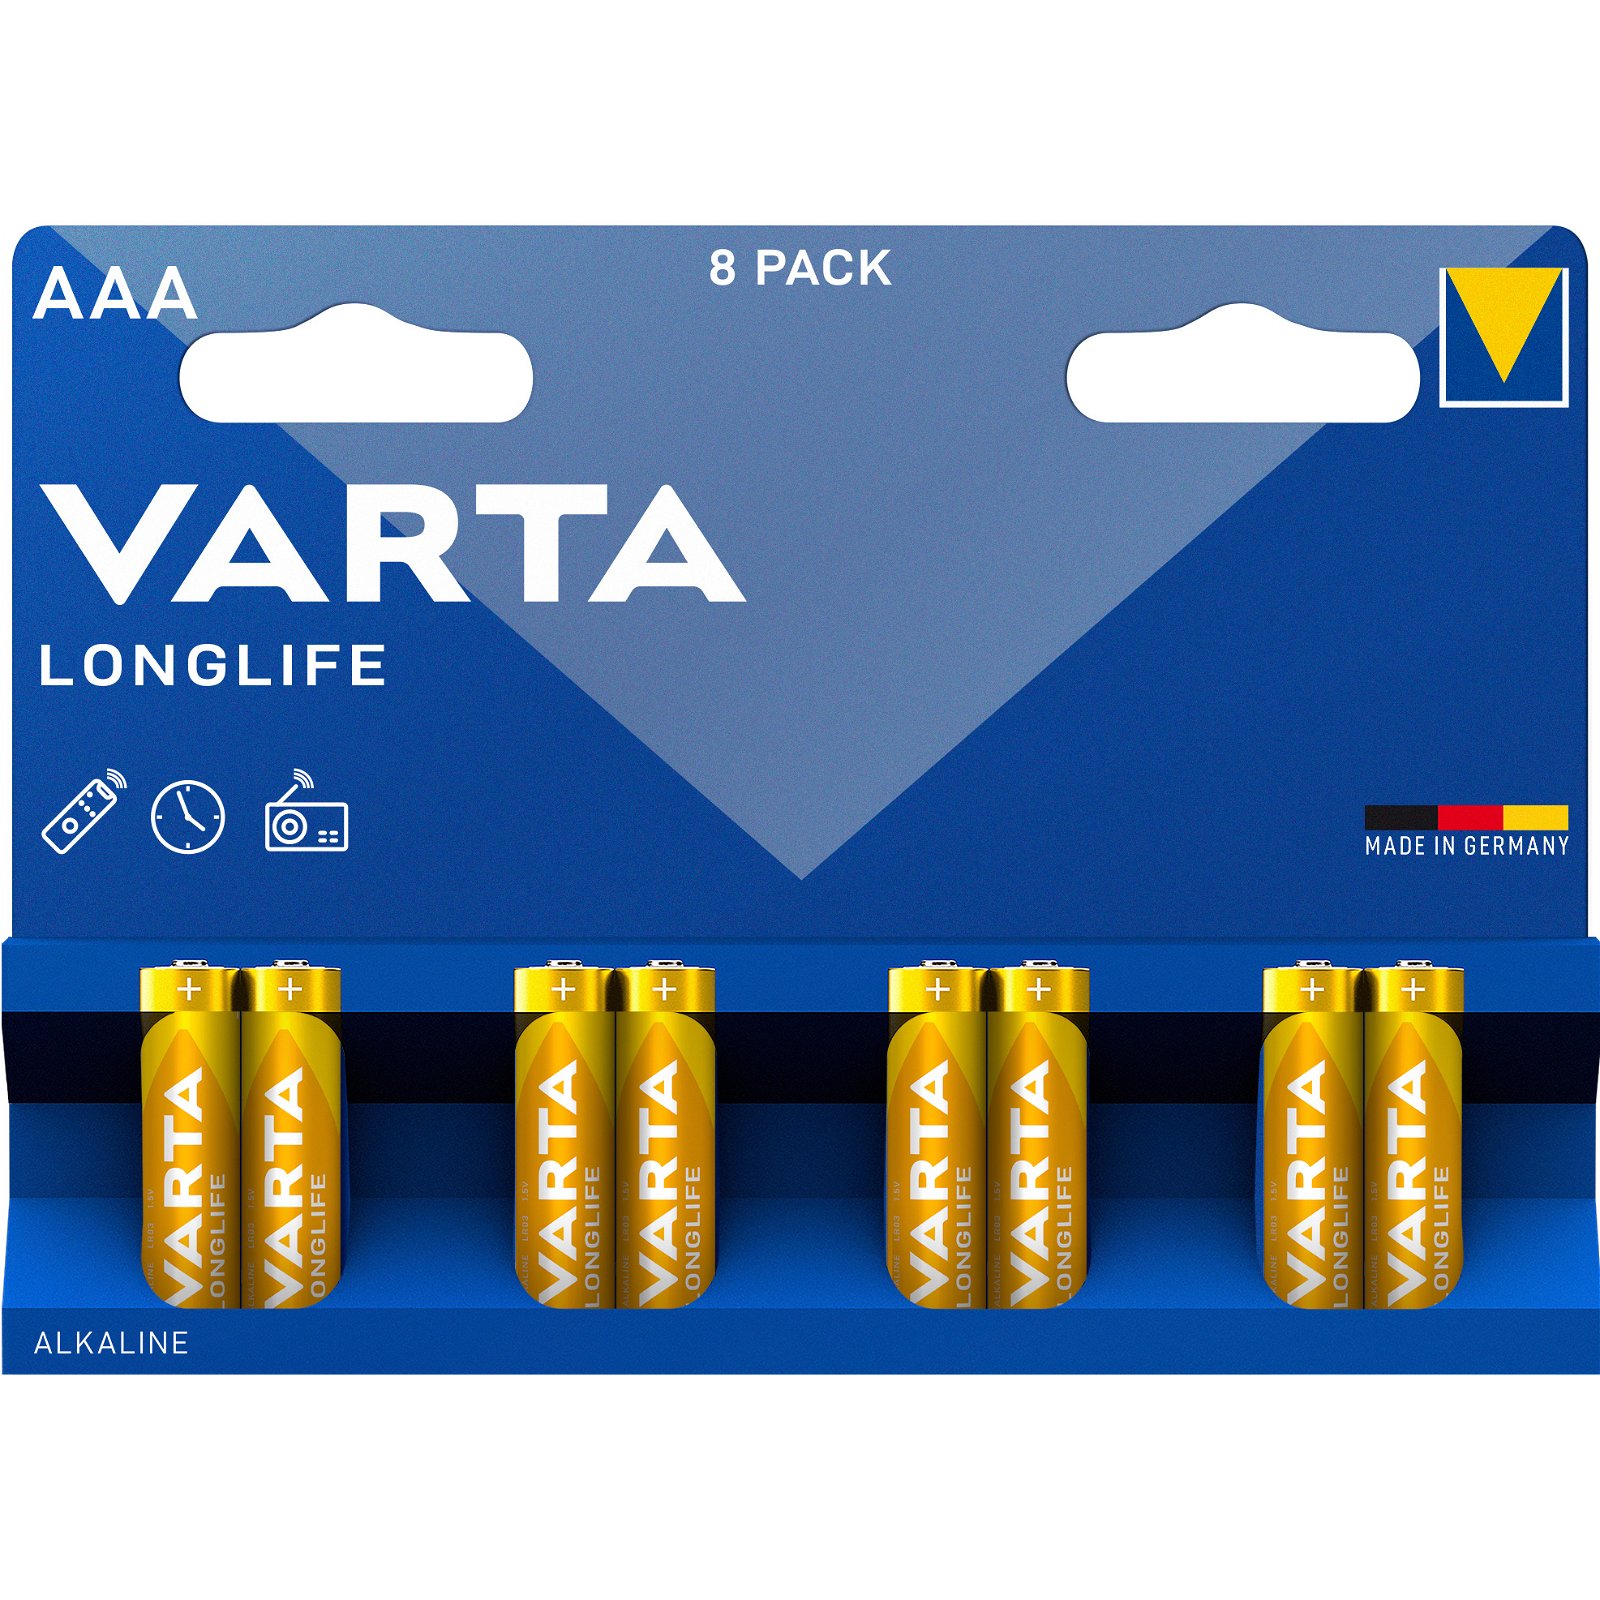 VARTA LongLife batteri AAA/LR03 1.5 v 8 stk